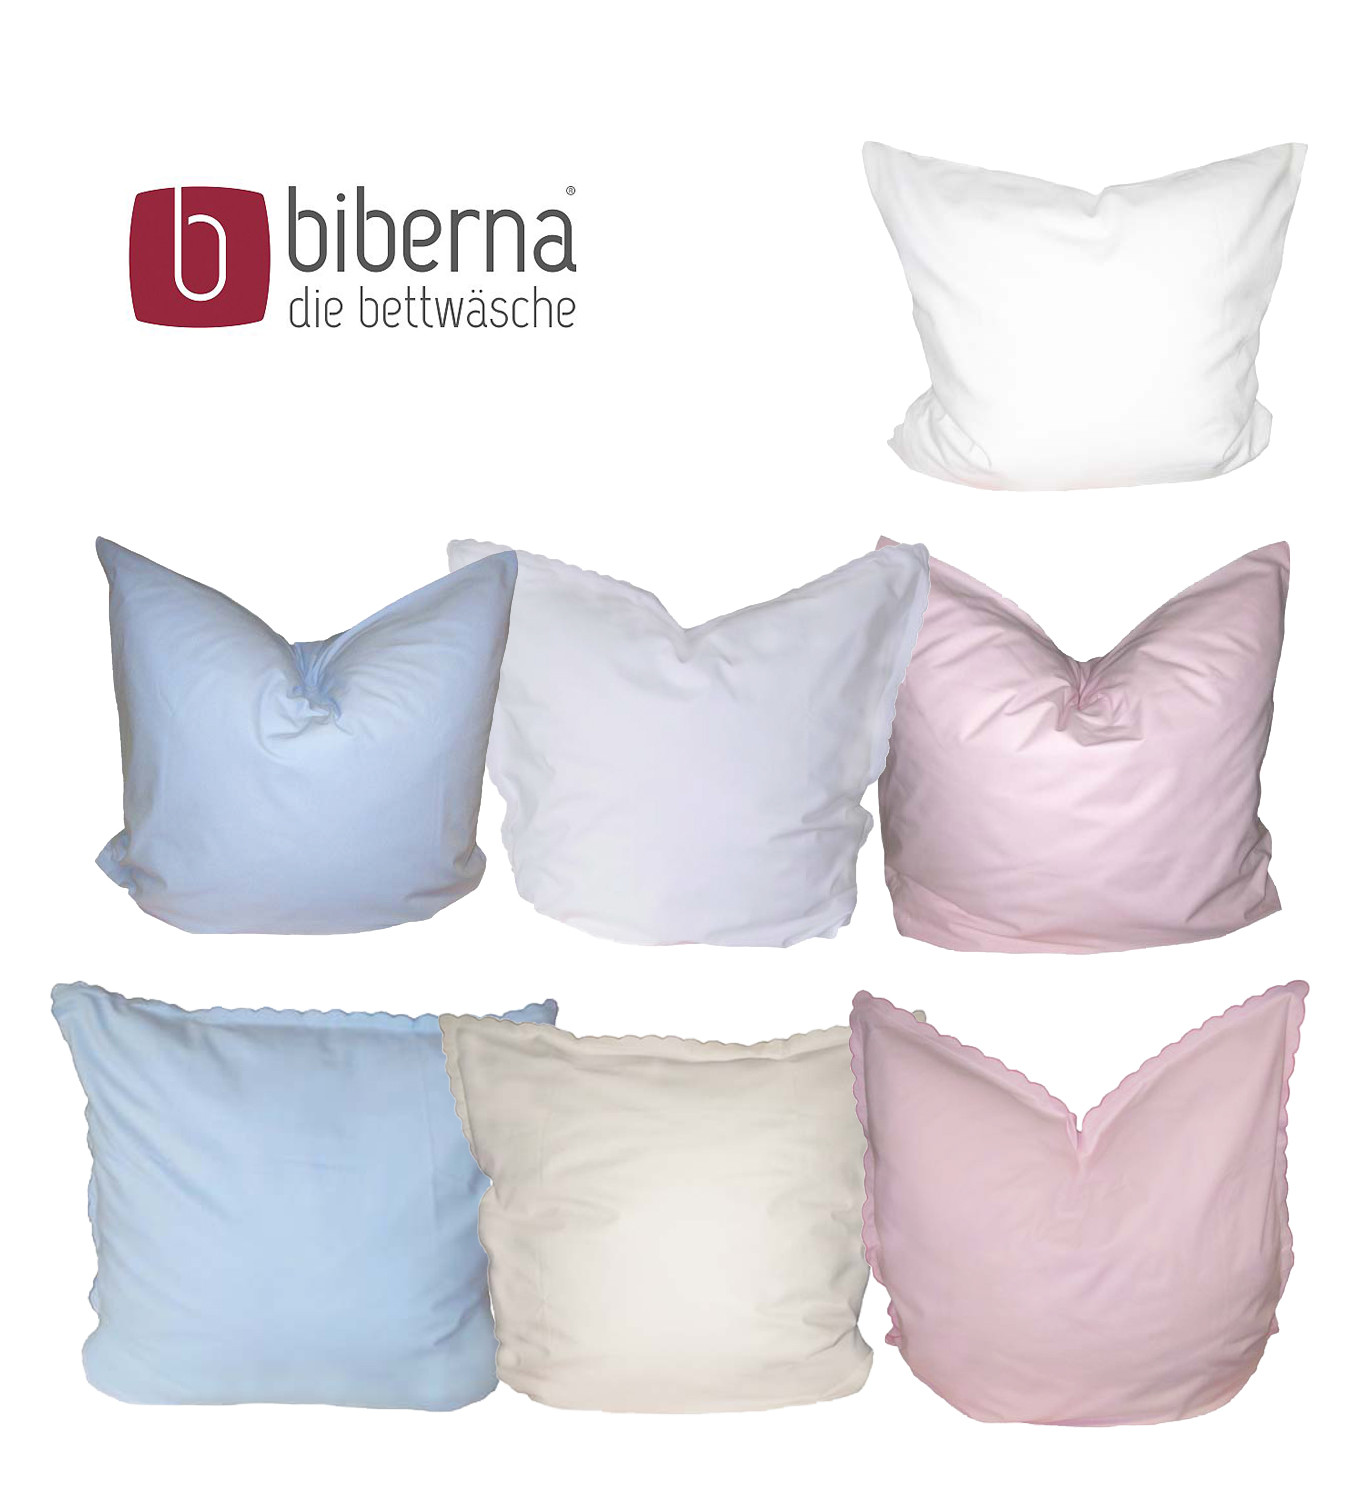 Biberna Biber / Linon Kissenbezug 80x80 cm in weiß, rosa, creme, hellblau